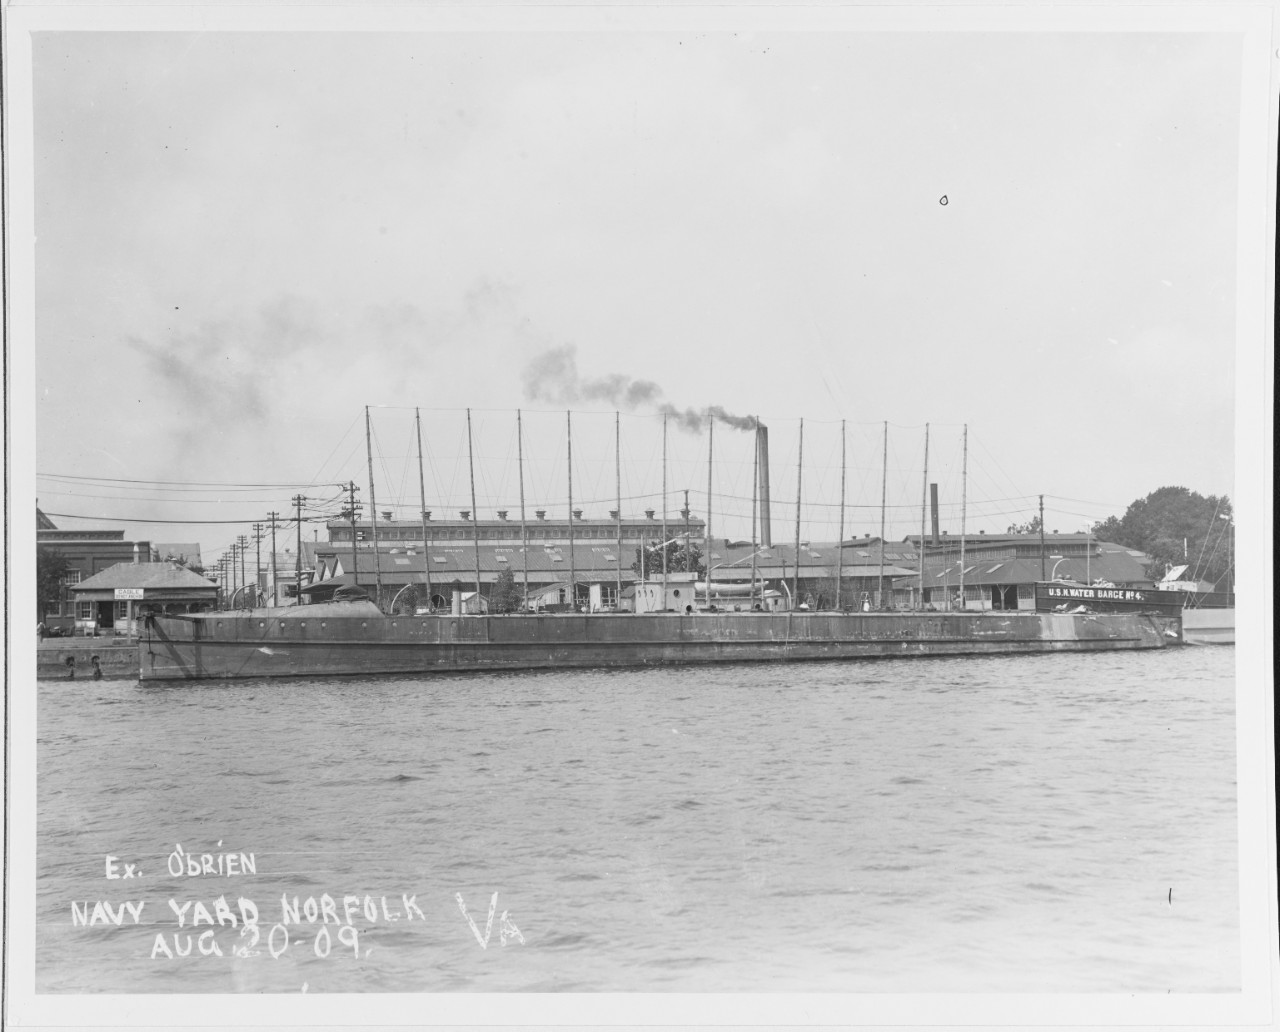 USS O'BRIEN (TB-30)